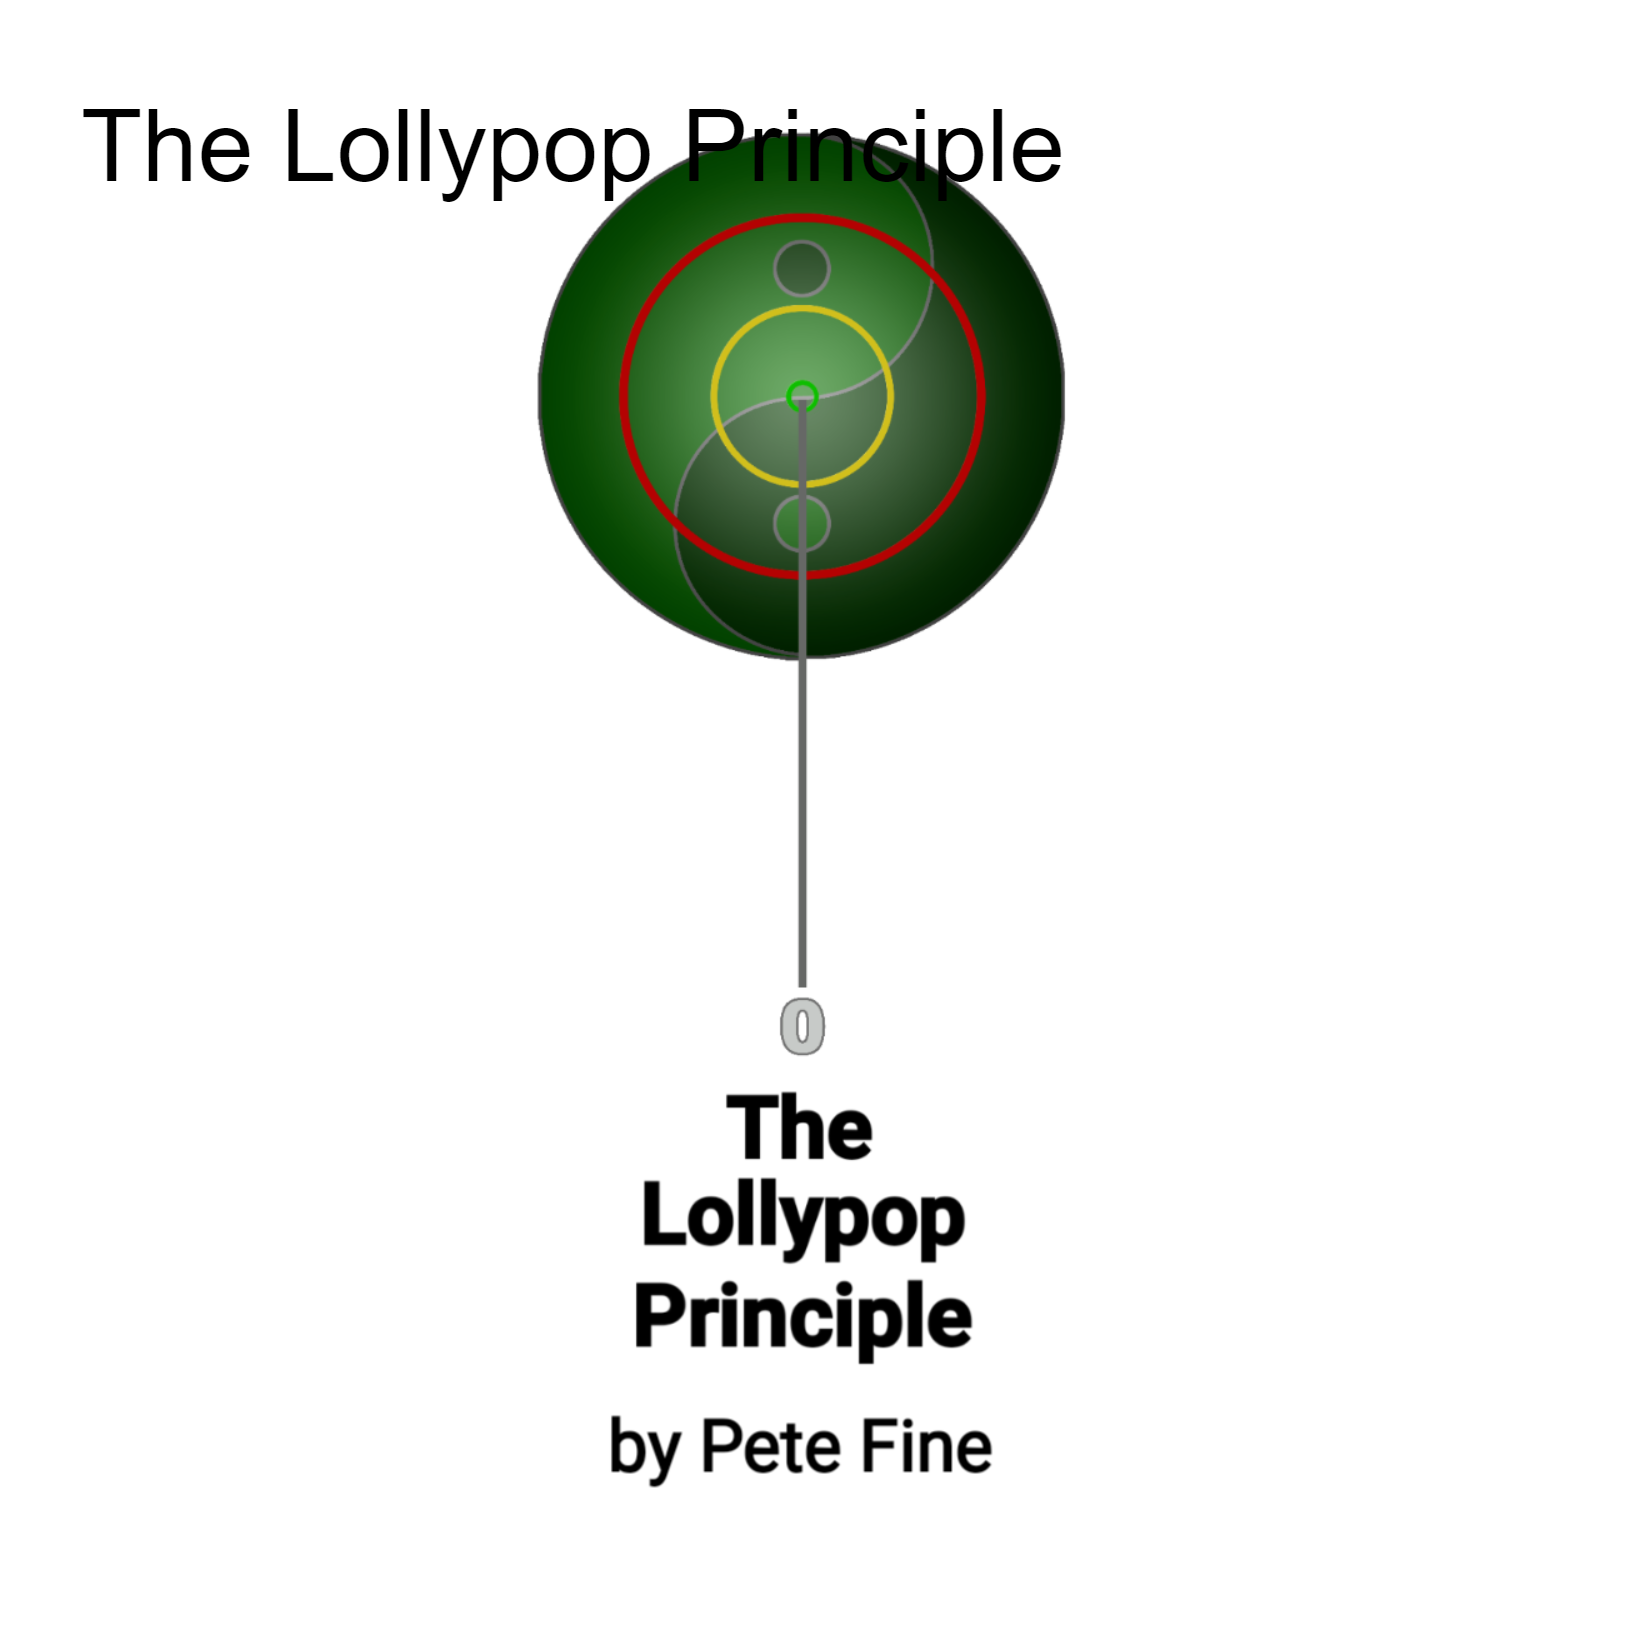 The Lollypop Principle